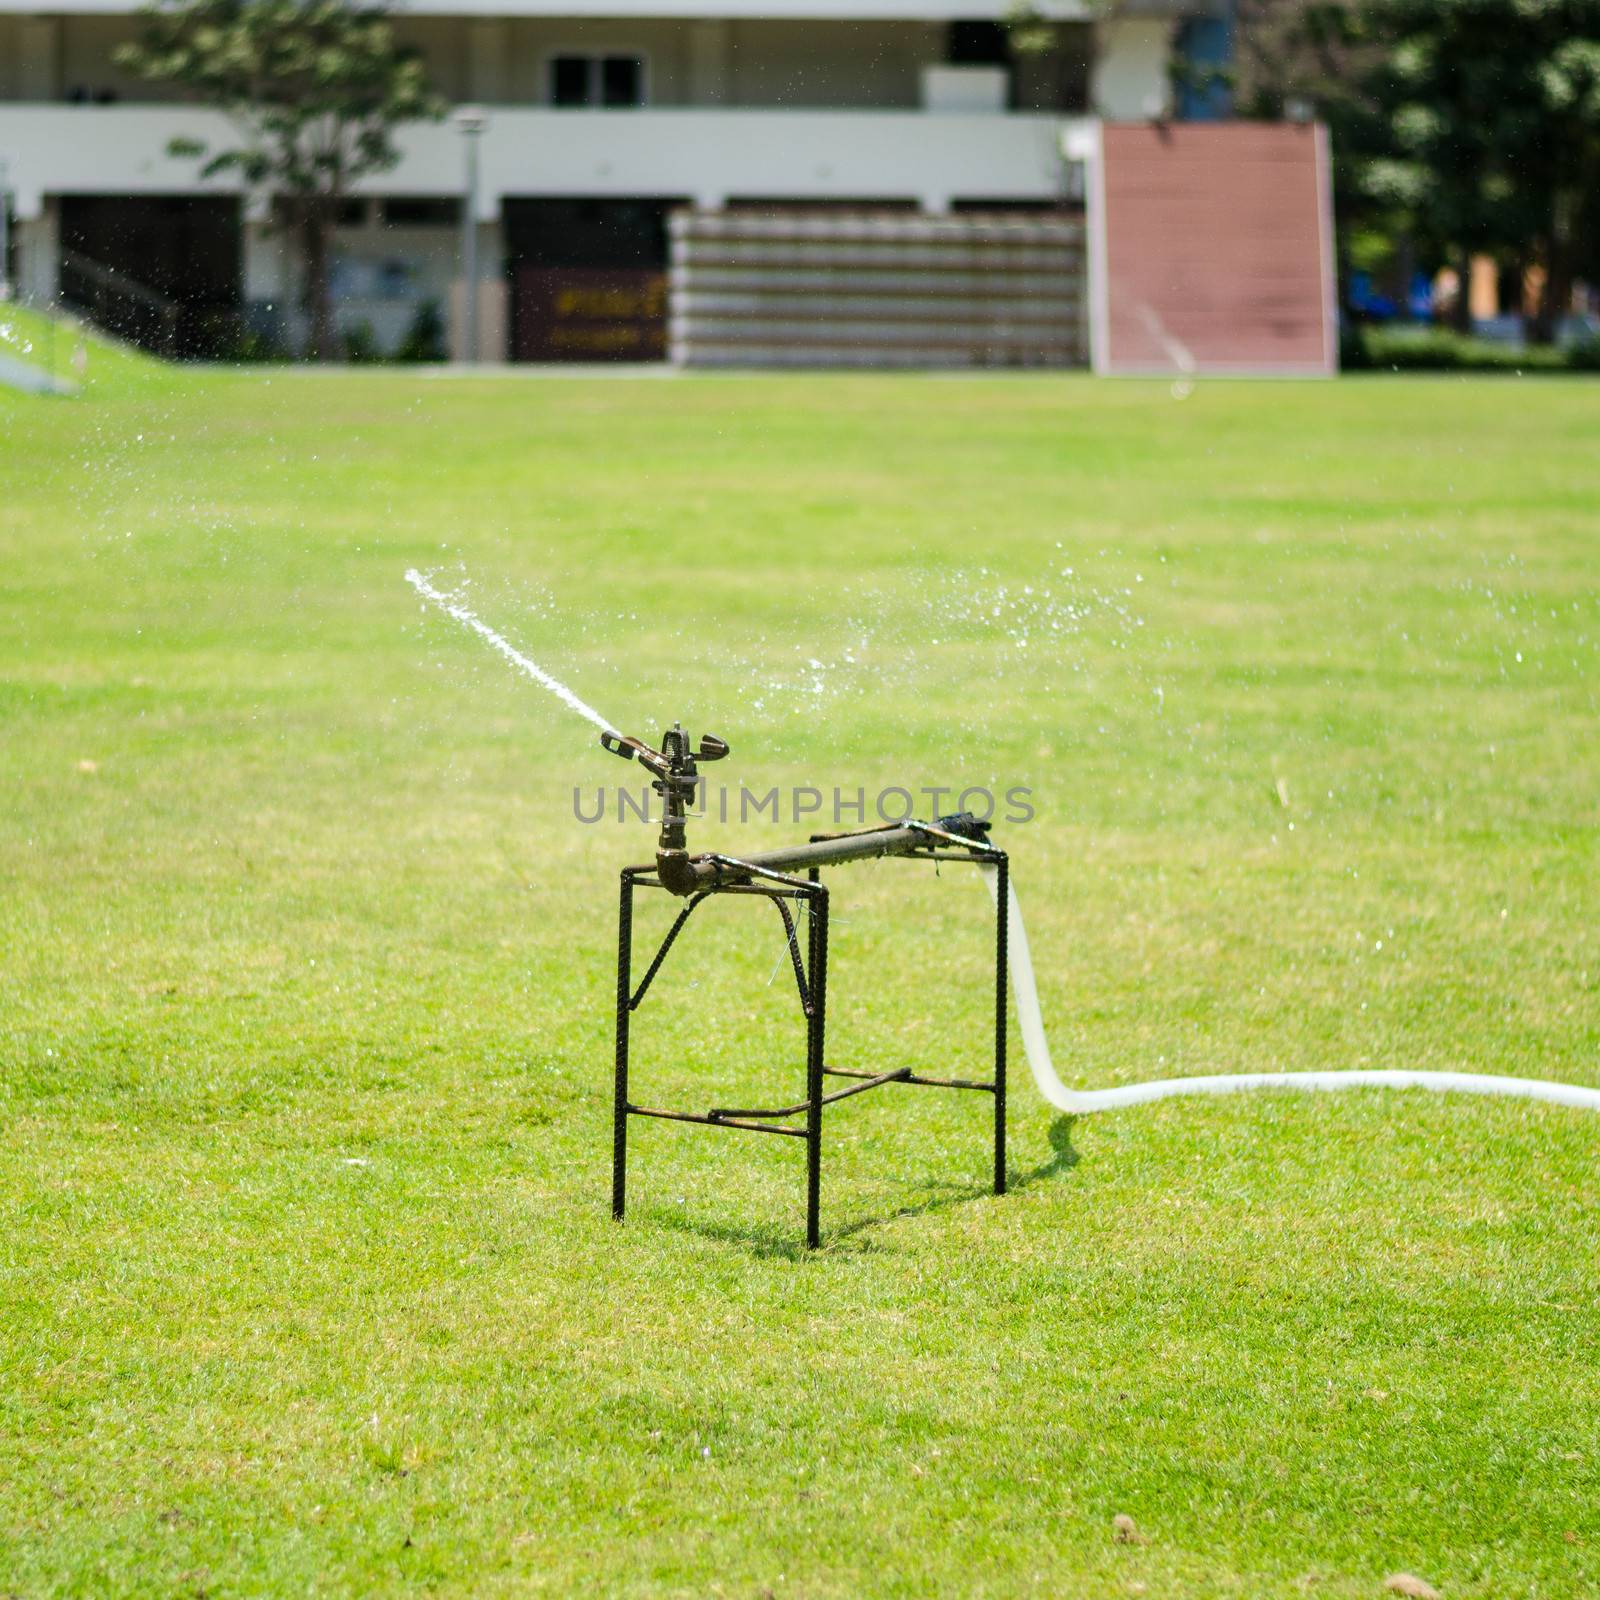 watering in football field by ammza12